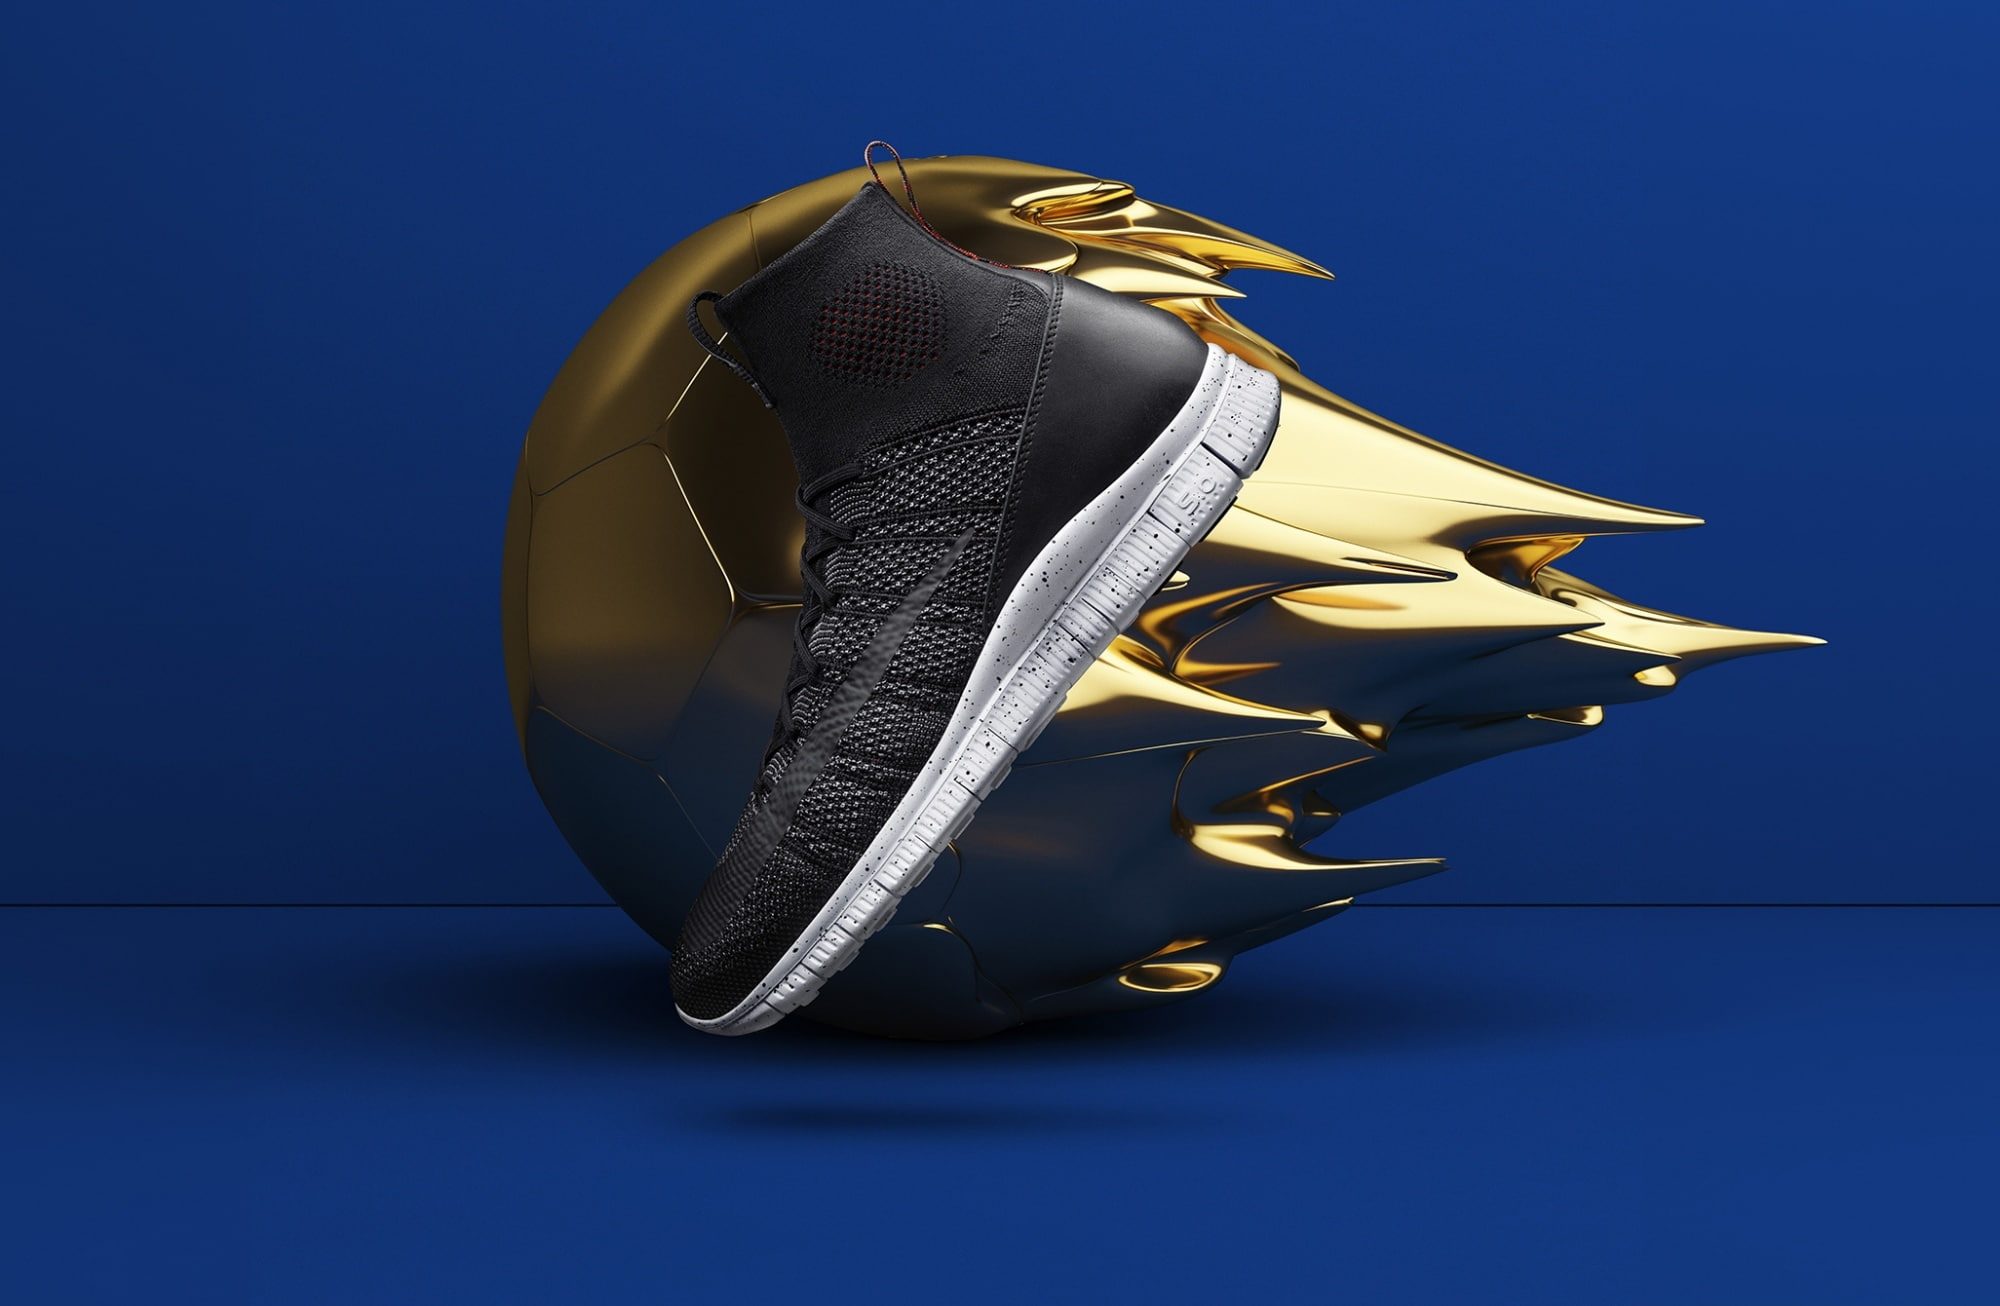 Cool Shoe Design, Golden Ball, Blue Background, Sports, Football